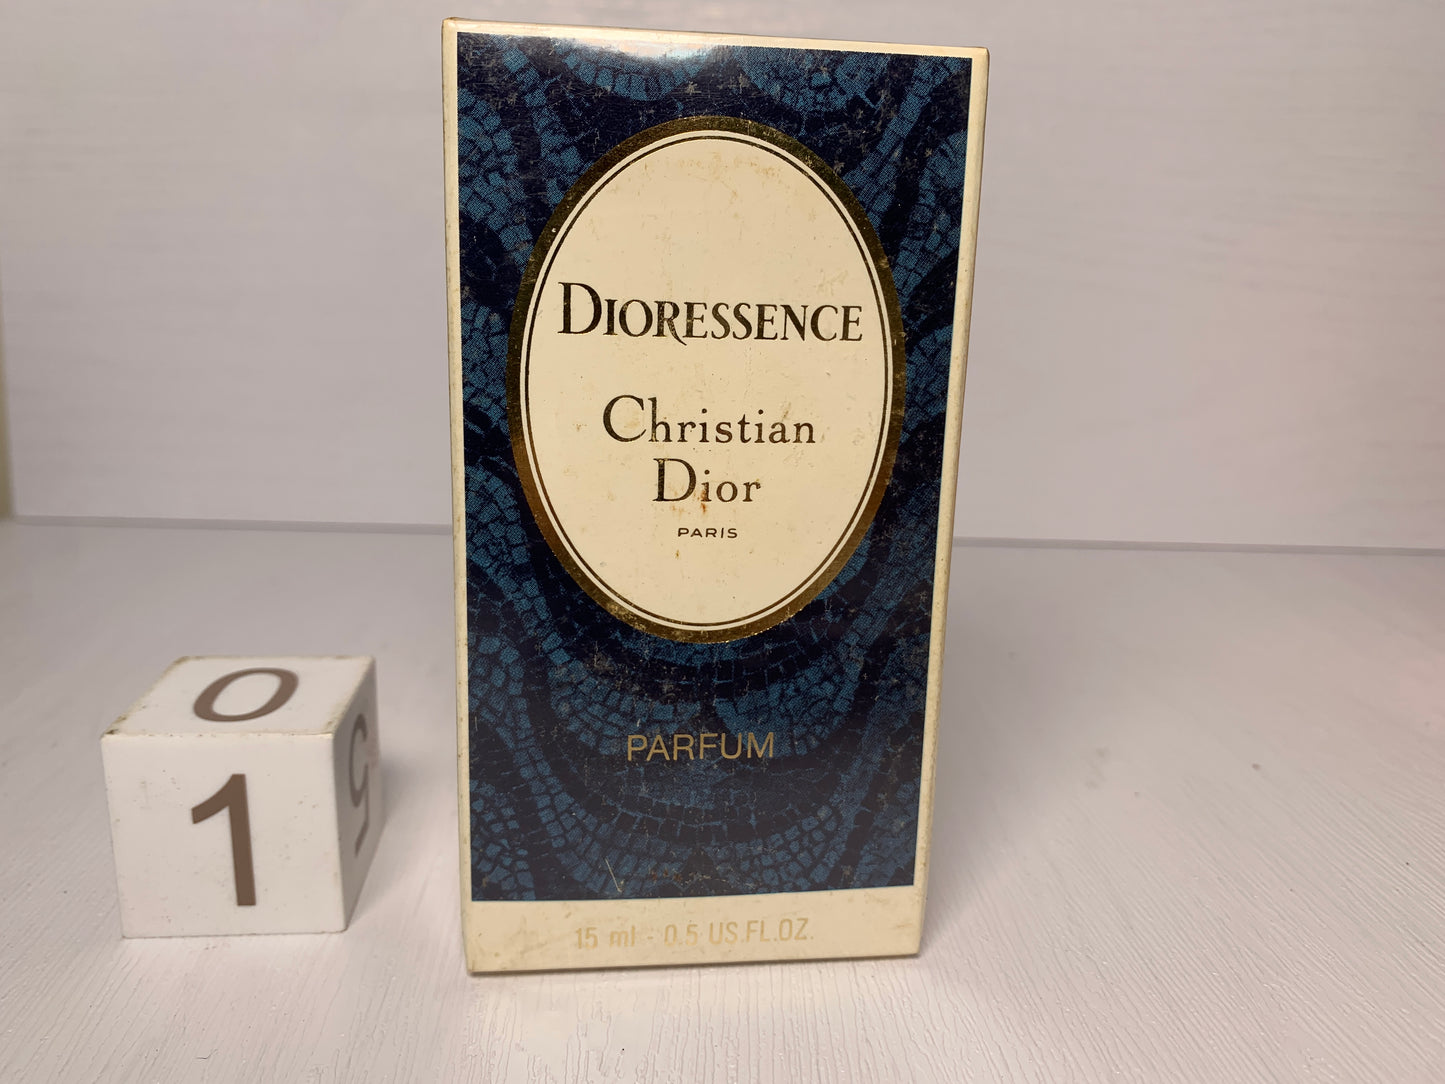 Rare Christian Dior Dune 50ml 1.7 oz Eau de Toilette EDT